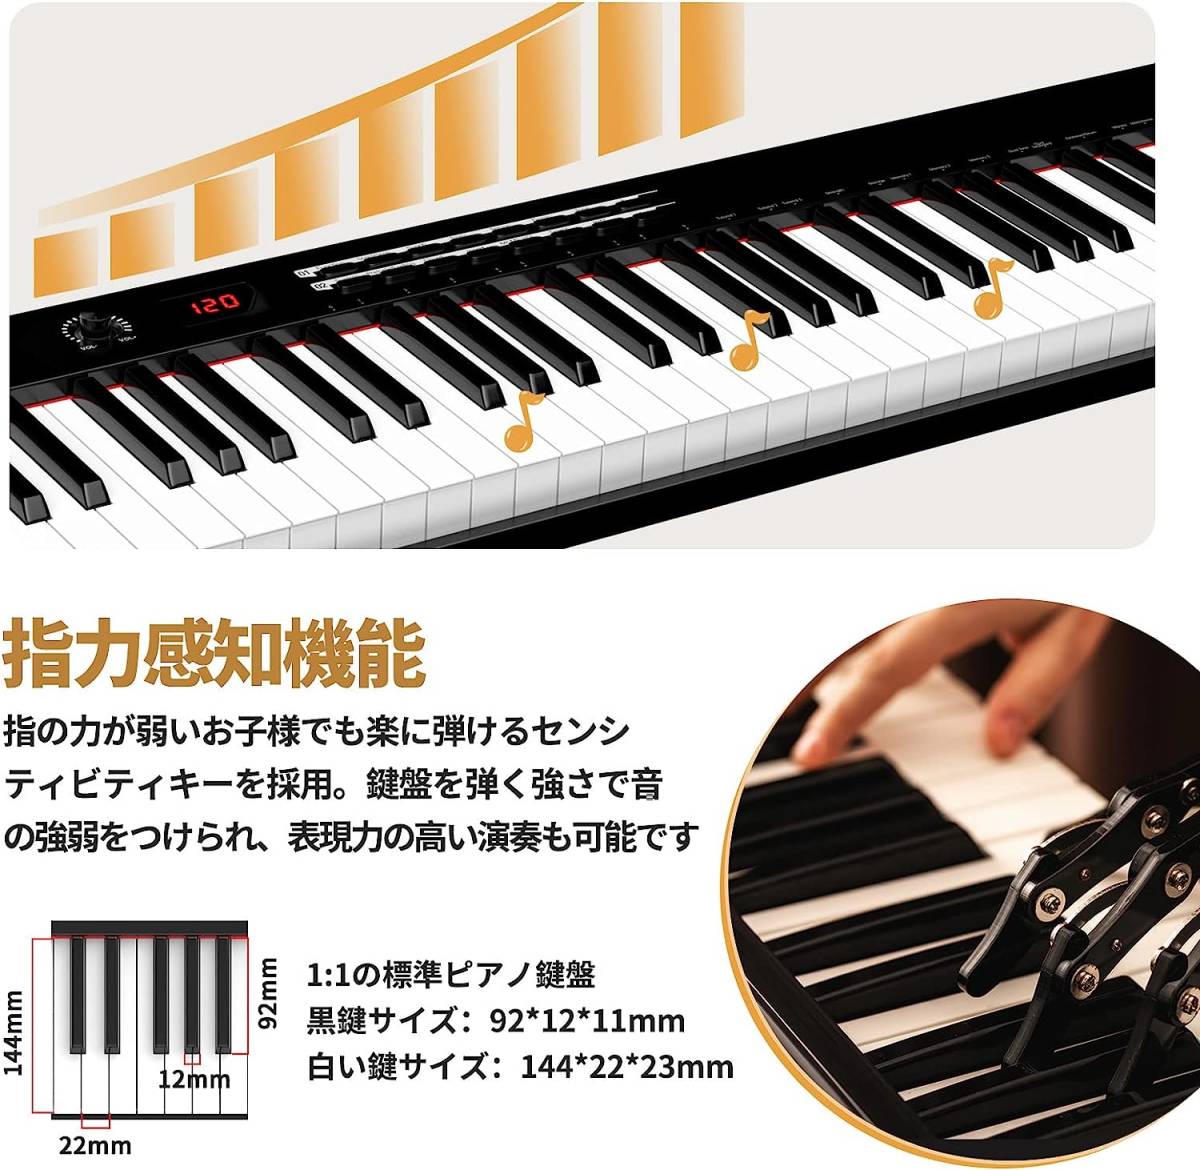 電子ピアノ 鍵盤 初心者向け キーボード ピアノ 指力感知機能